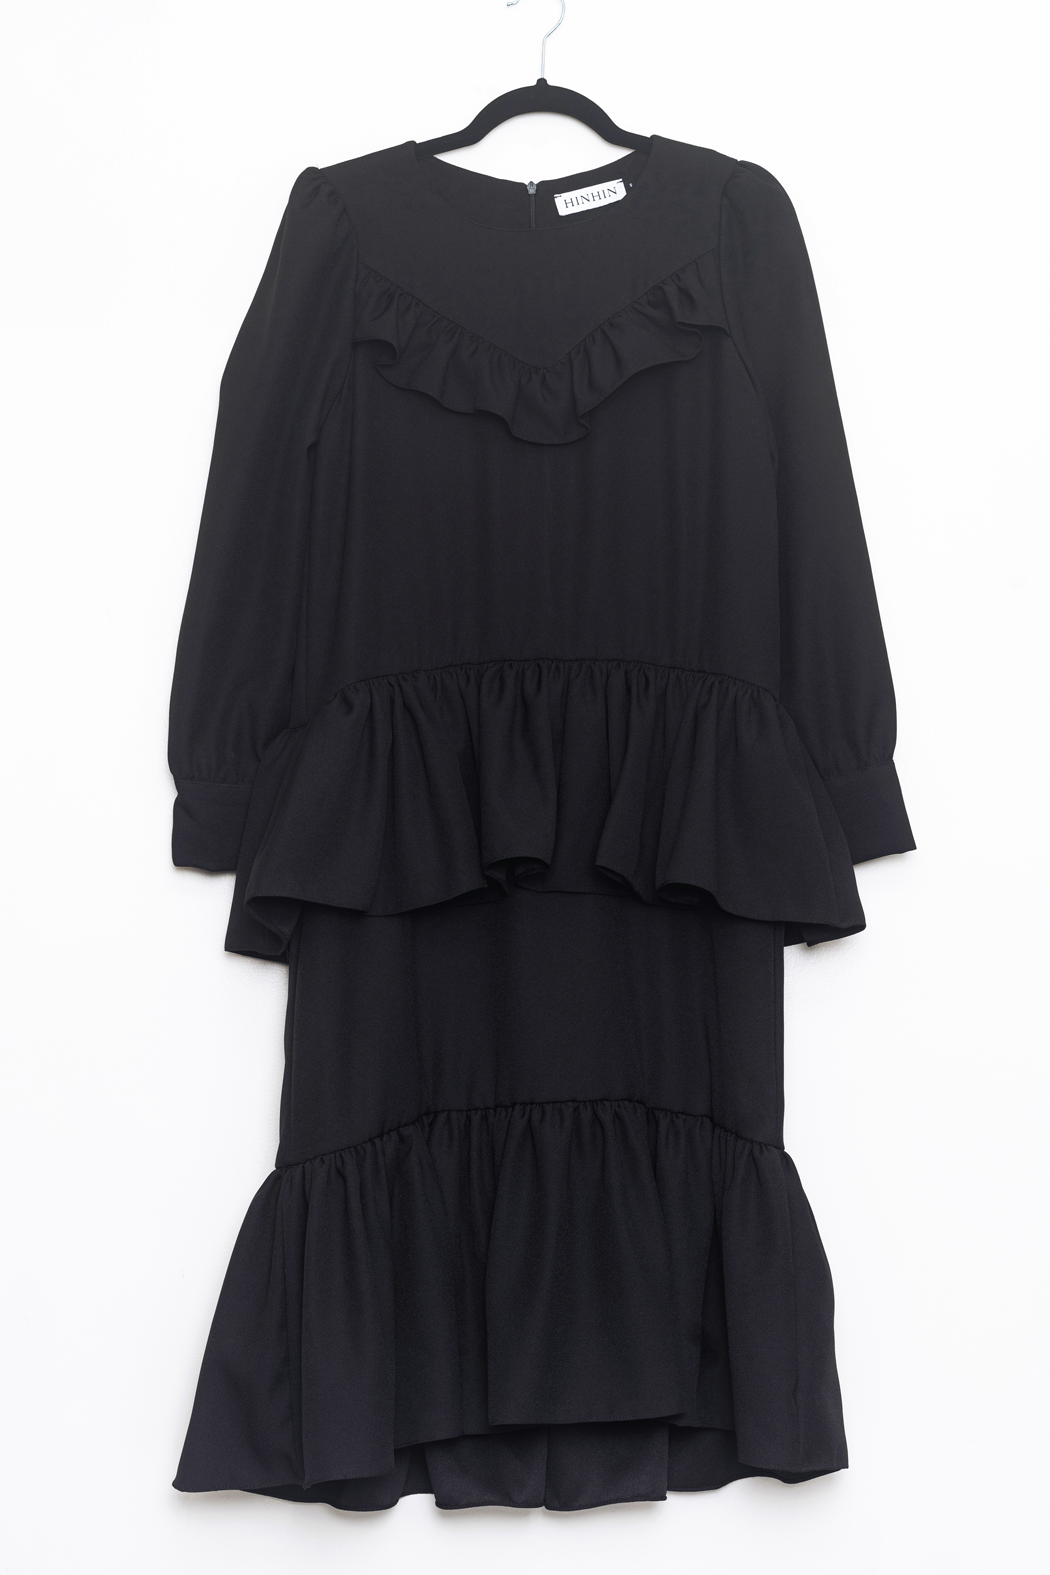 HINHIN - Bini Dress in Black